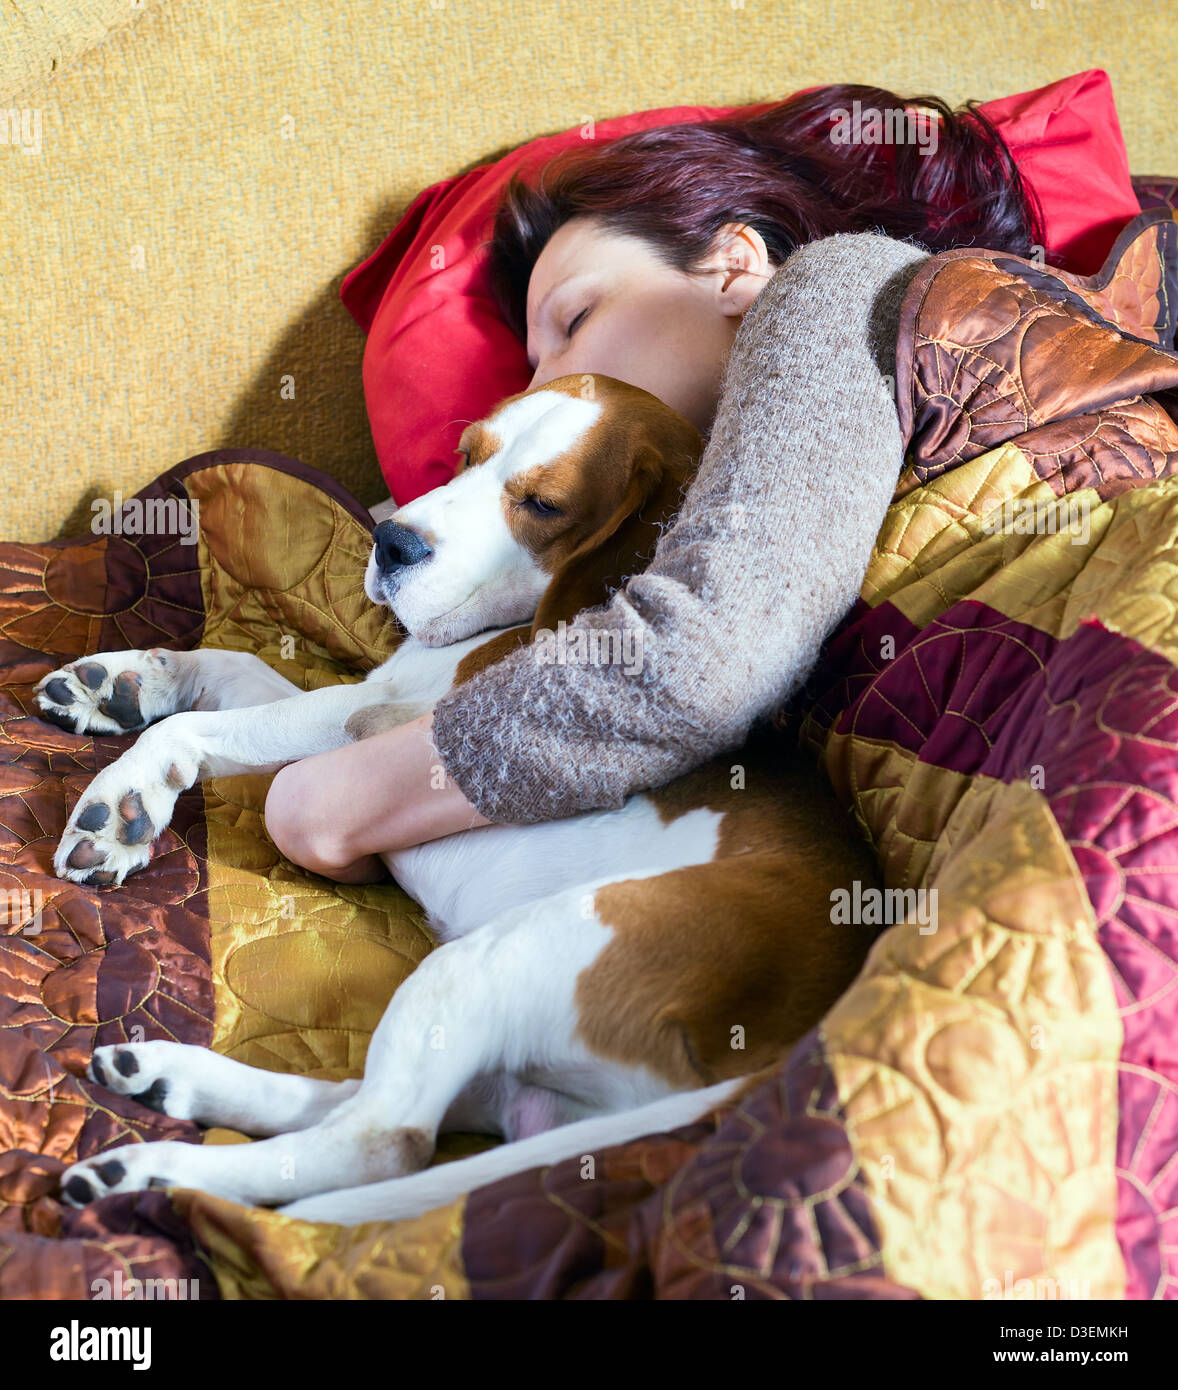 La femme endormie et son chien Banque D'Images